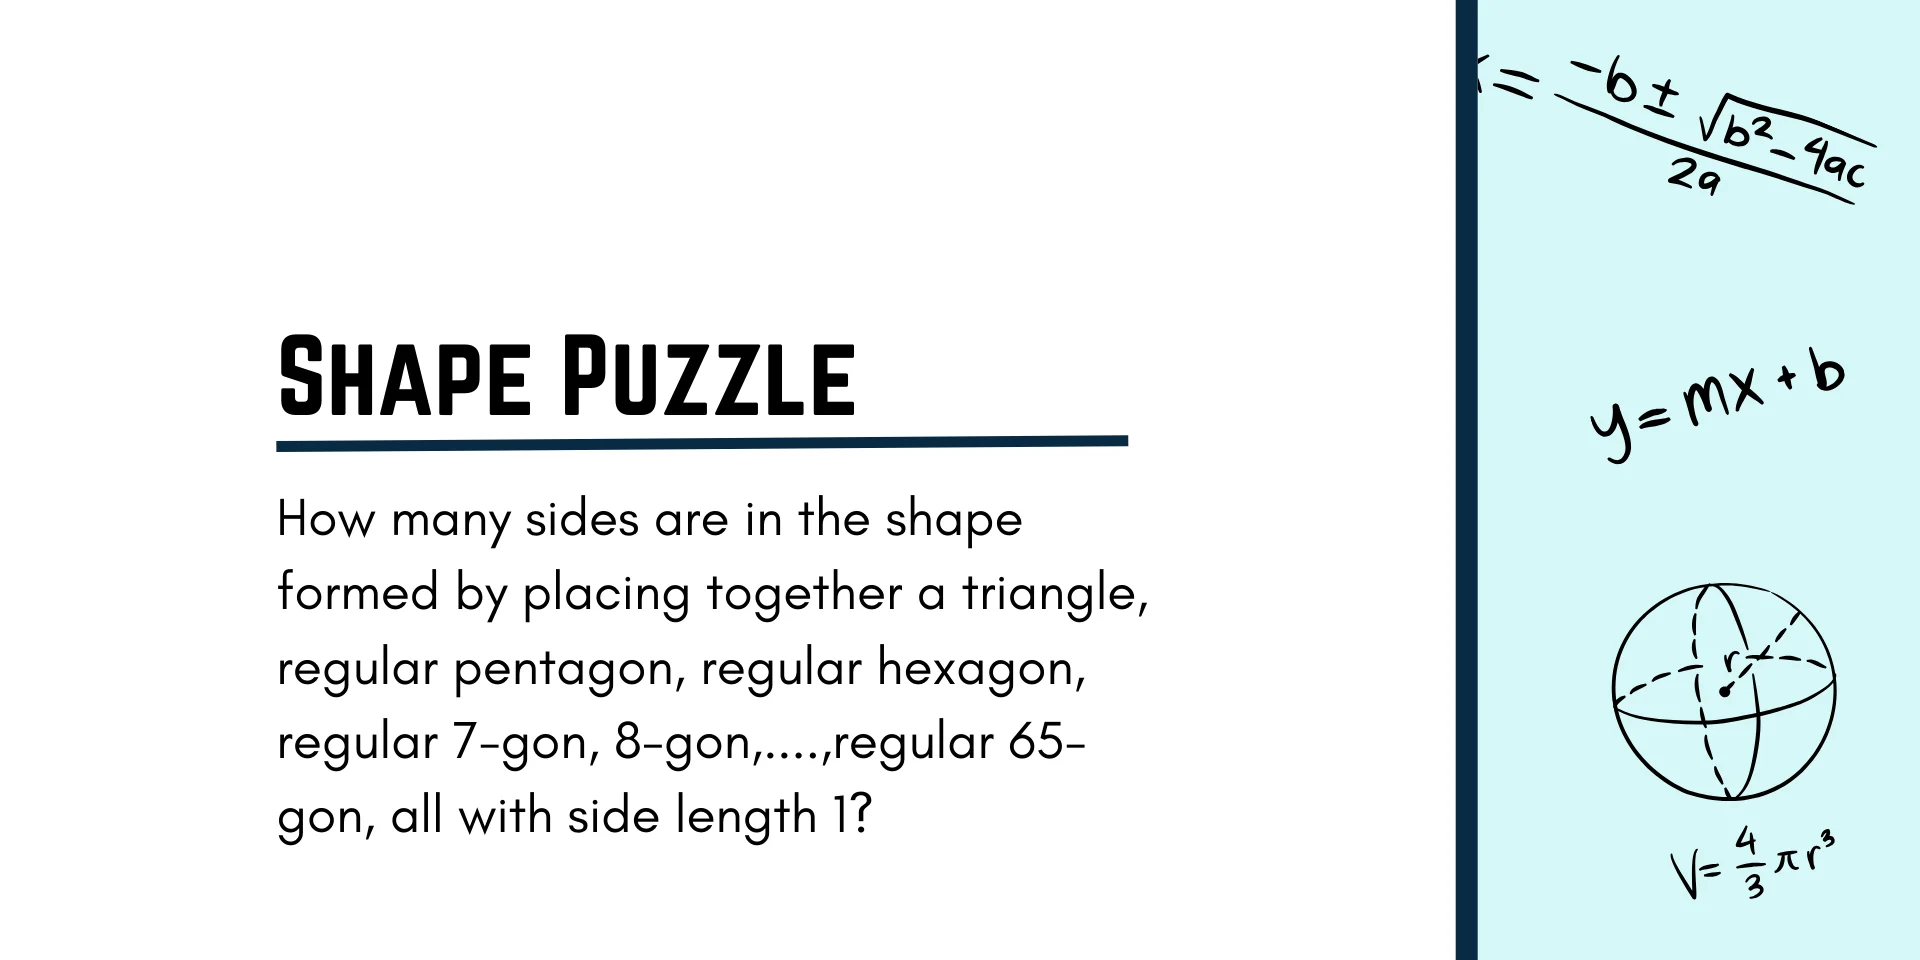 Shape Puzzle 图形难题